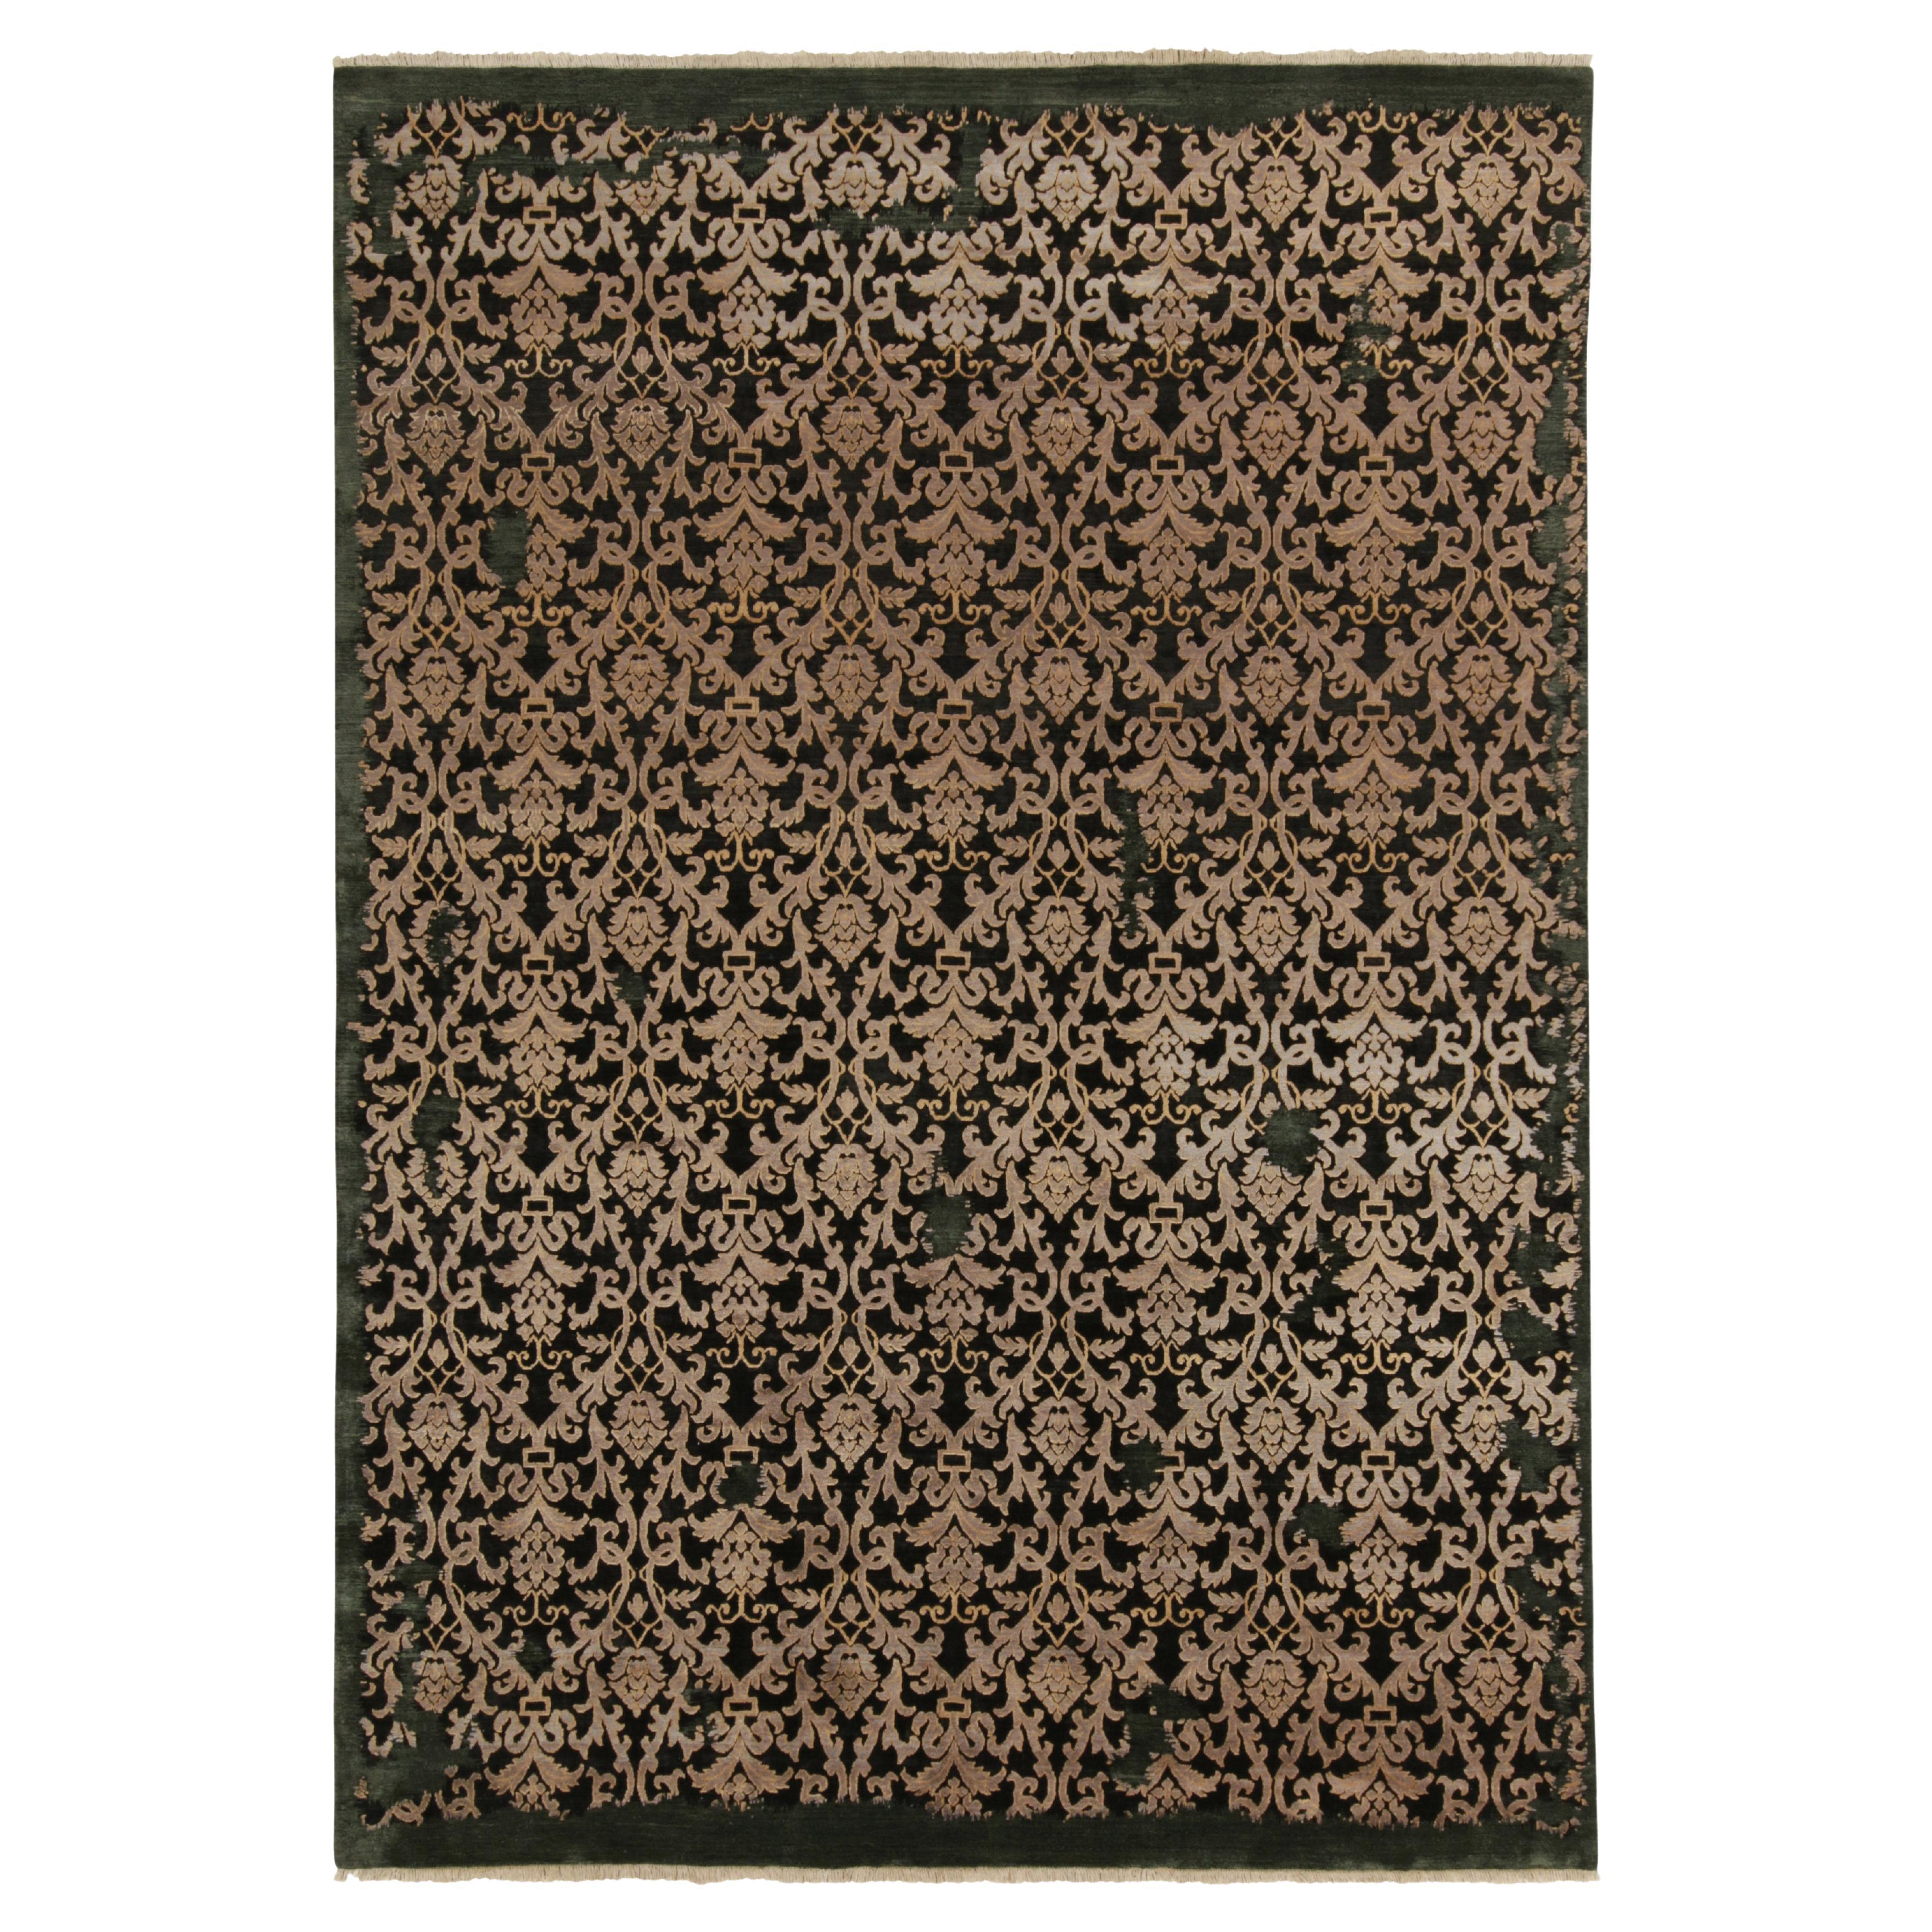 Tapis & Kilims - Tapis de style classique à motifs floraux argentés sur noir et vert